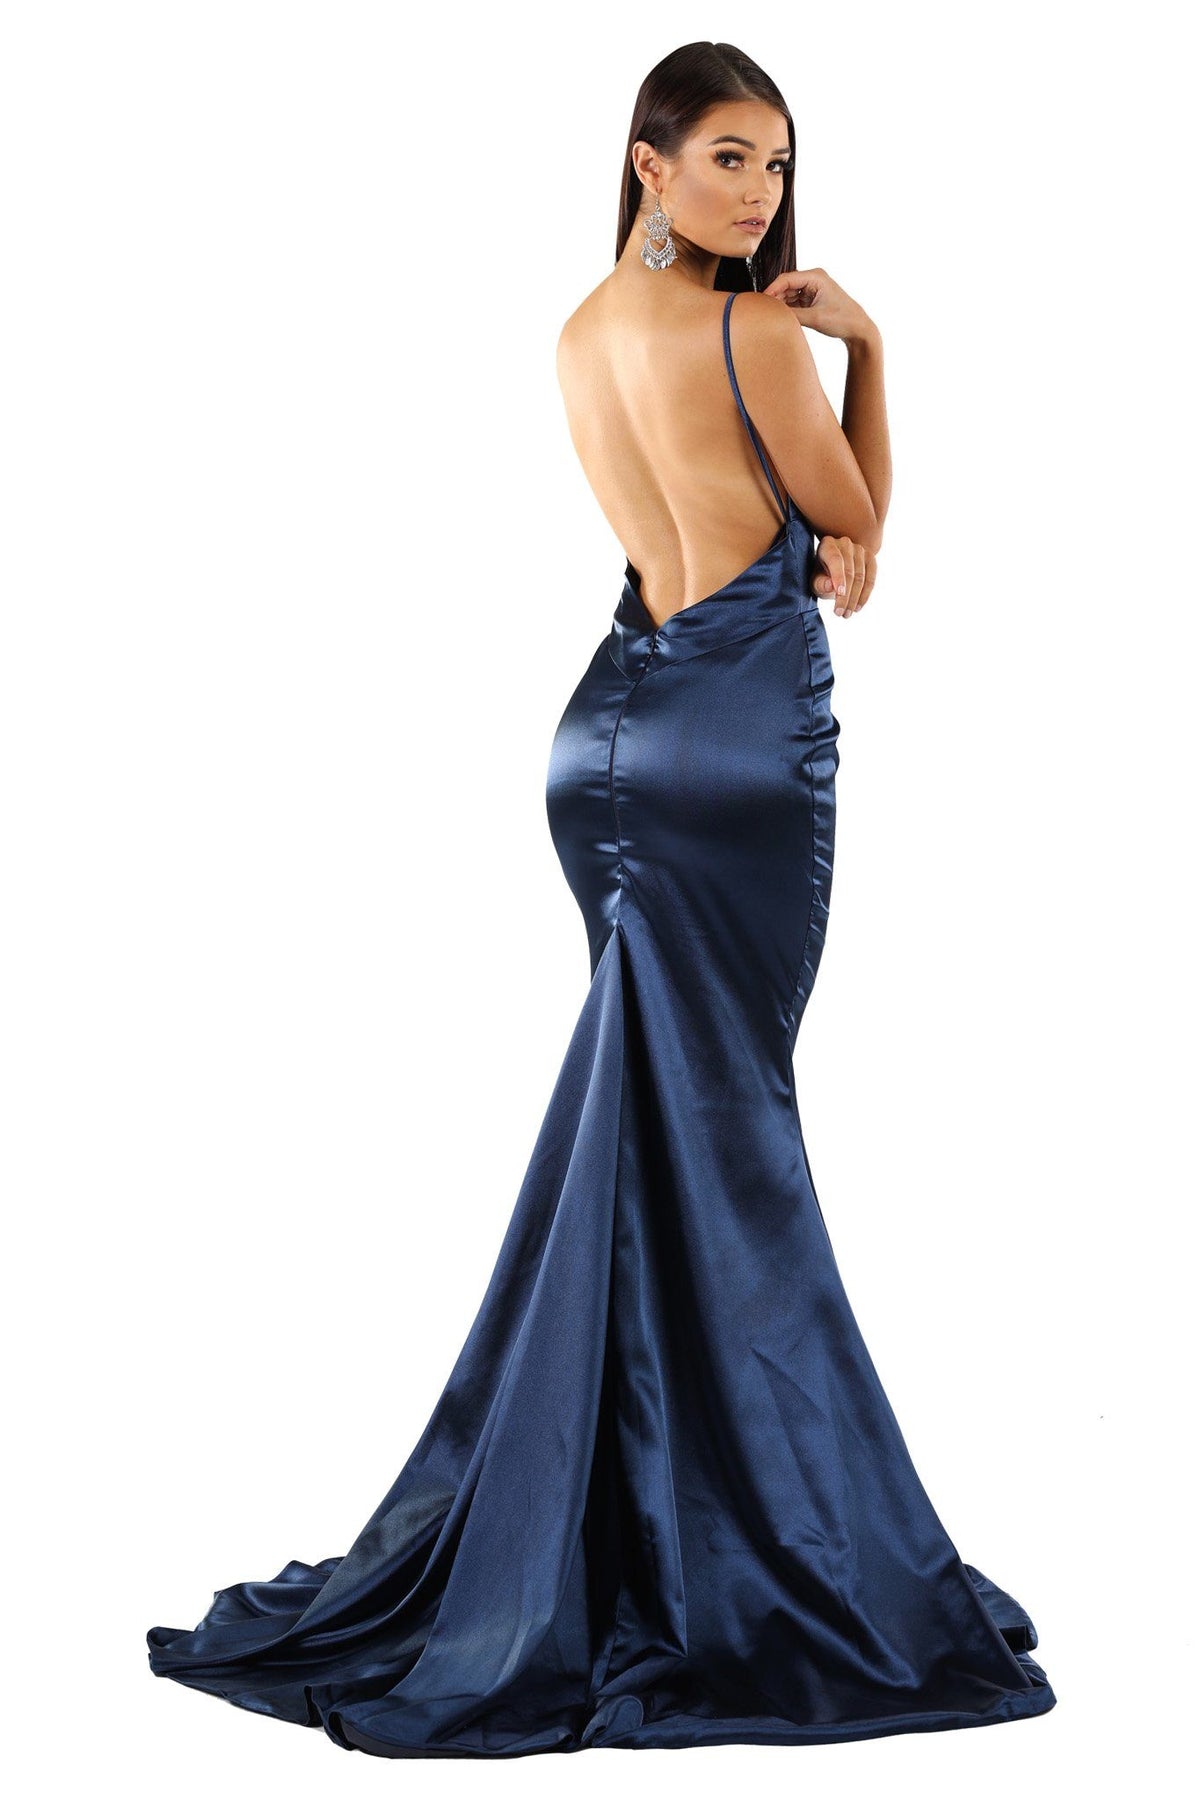 Backless Design of Navy Dark Blue Satin Formal Long Dress with deep V neckline, thin shoulder straps, open V back, floor sweep train